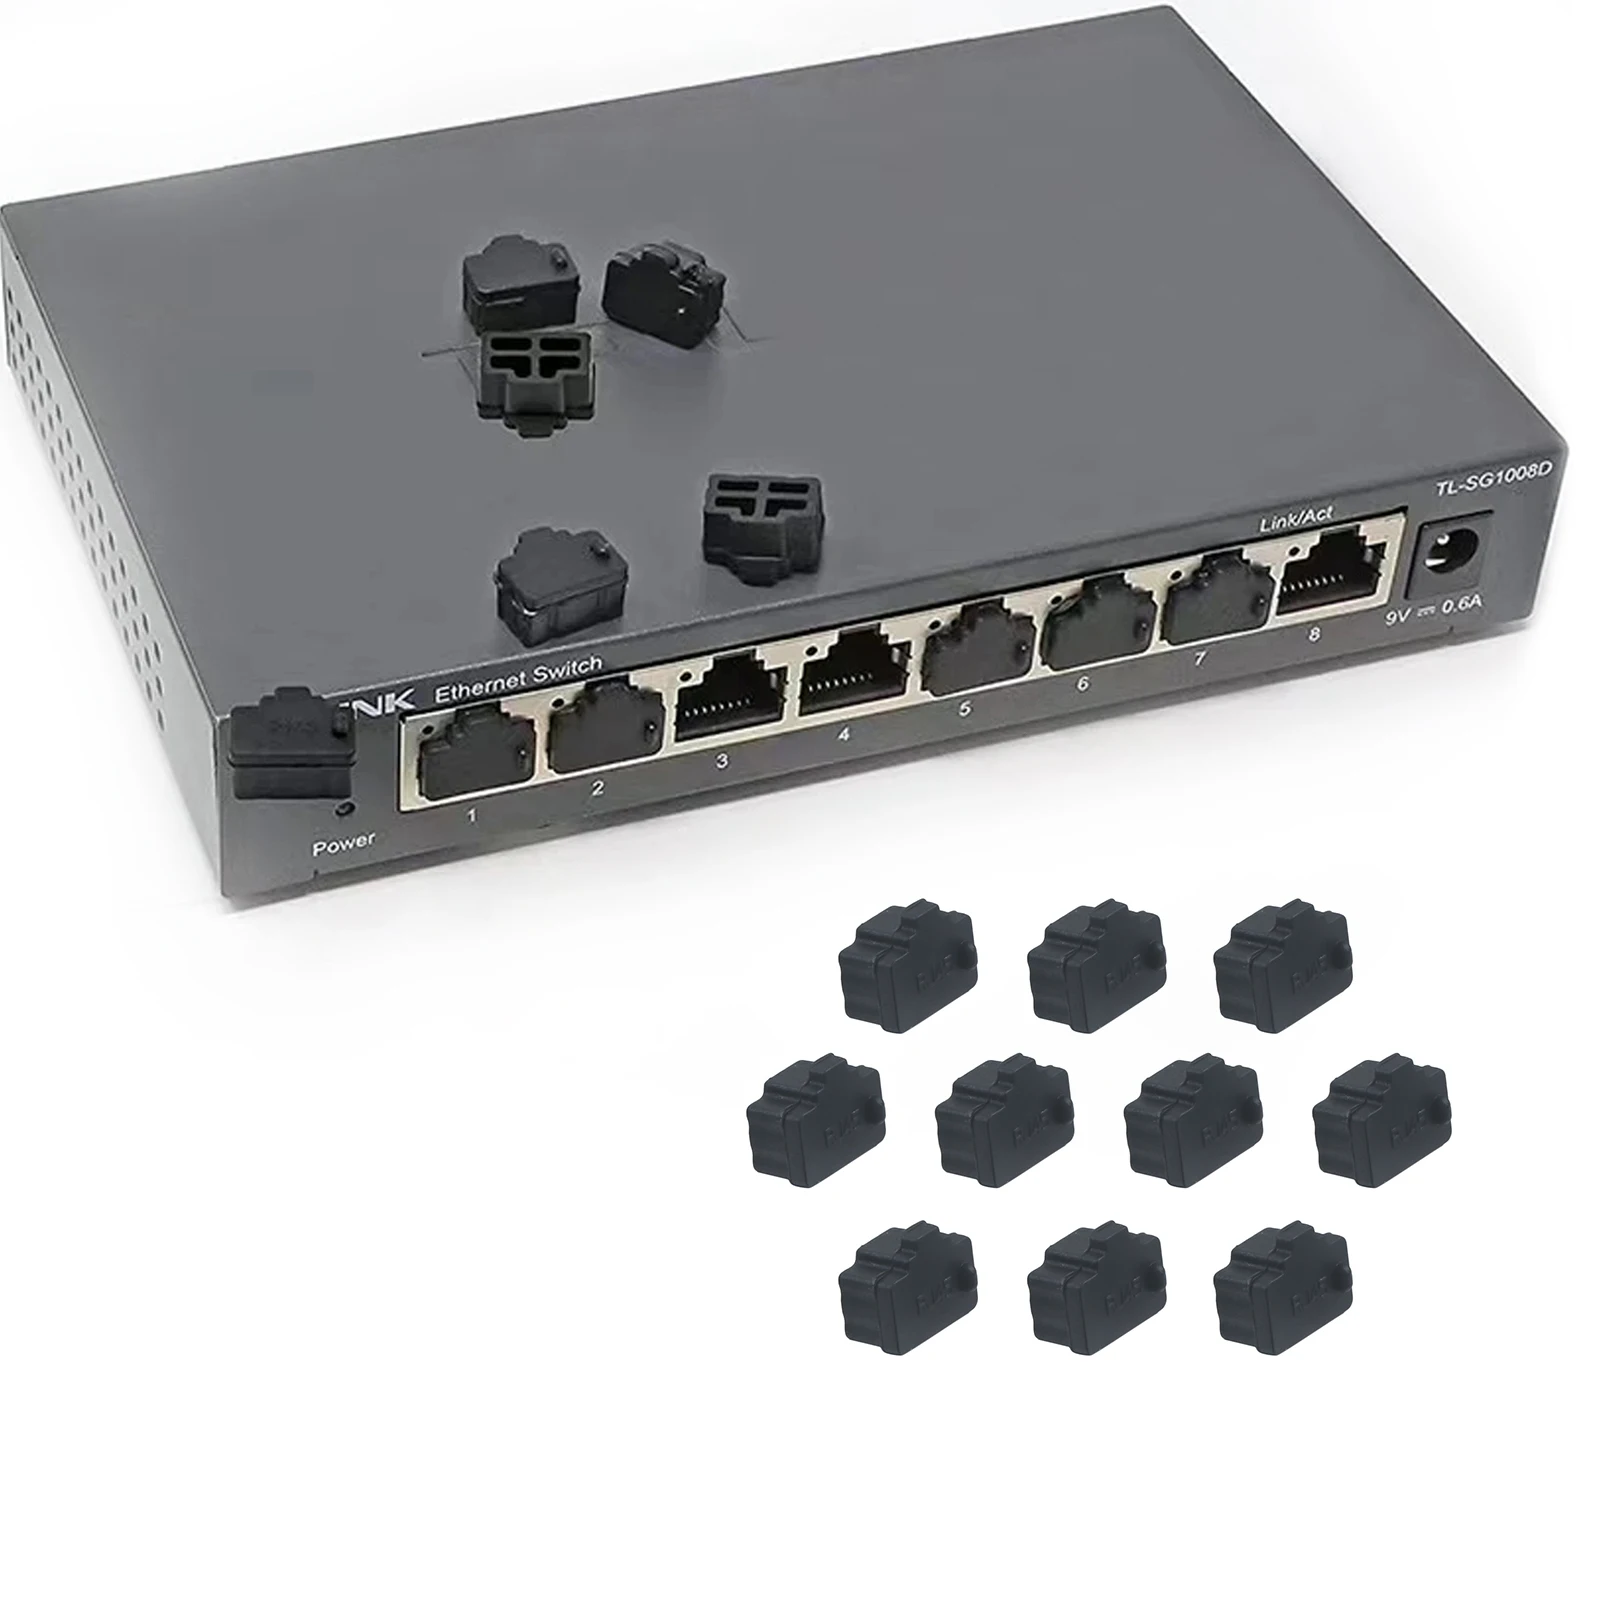 10 szt. Eternet Hub Port RJ45 pokrywa przeciwkurzowe osłona wtyk RJ45 do laptopa/komputera/routera złącze RJ45